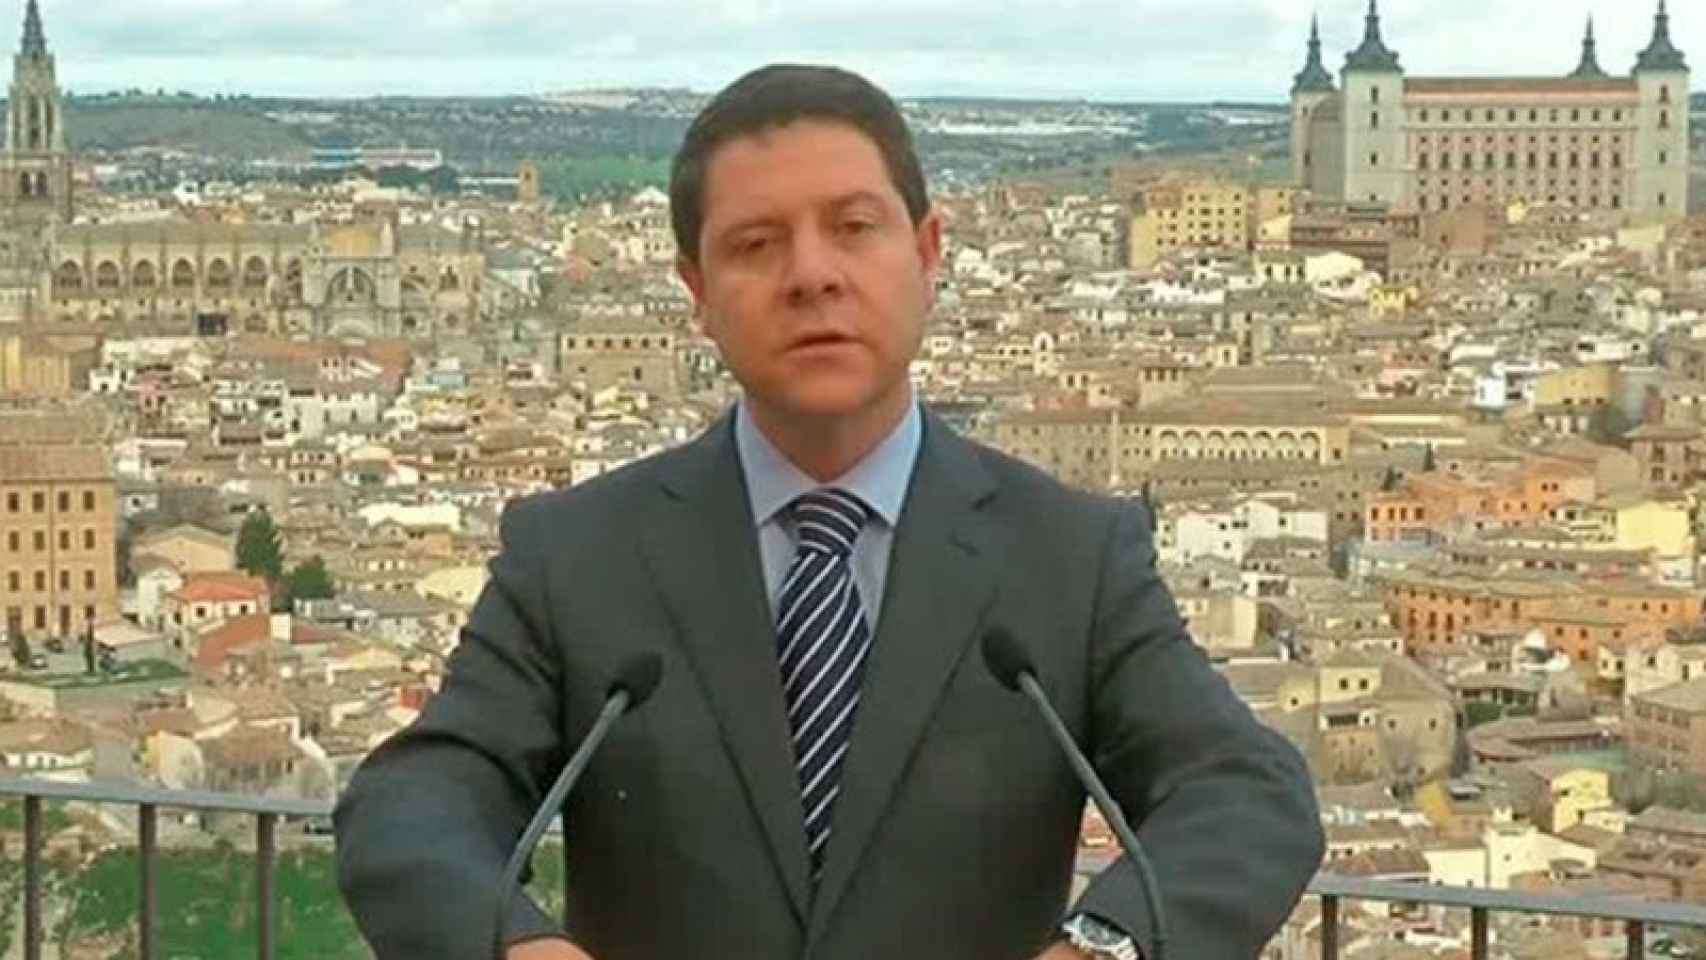 Emiliano García-Page, presidente de Castilla La Mancha.